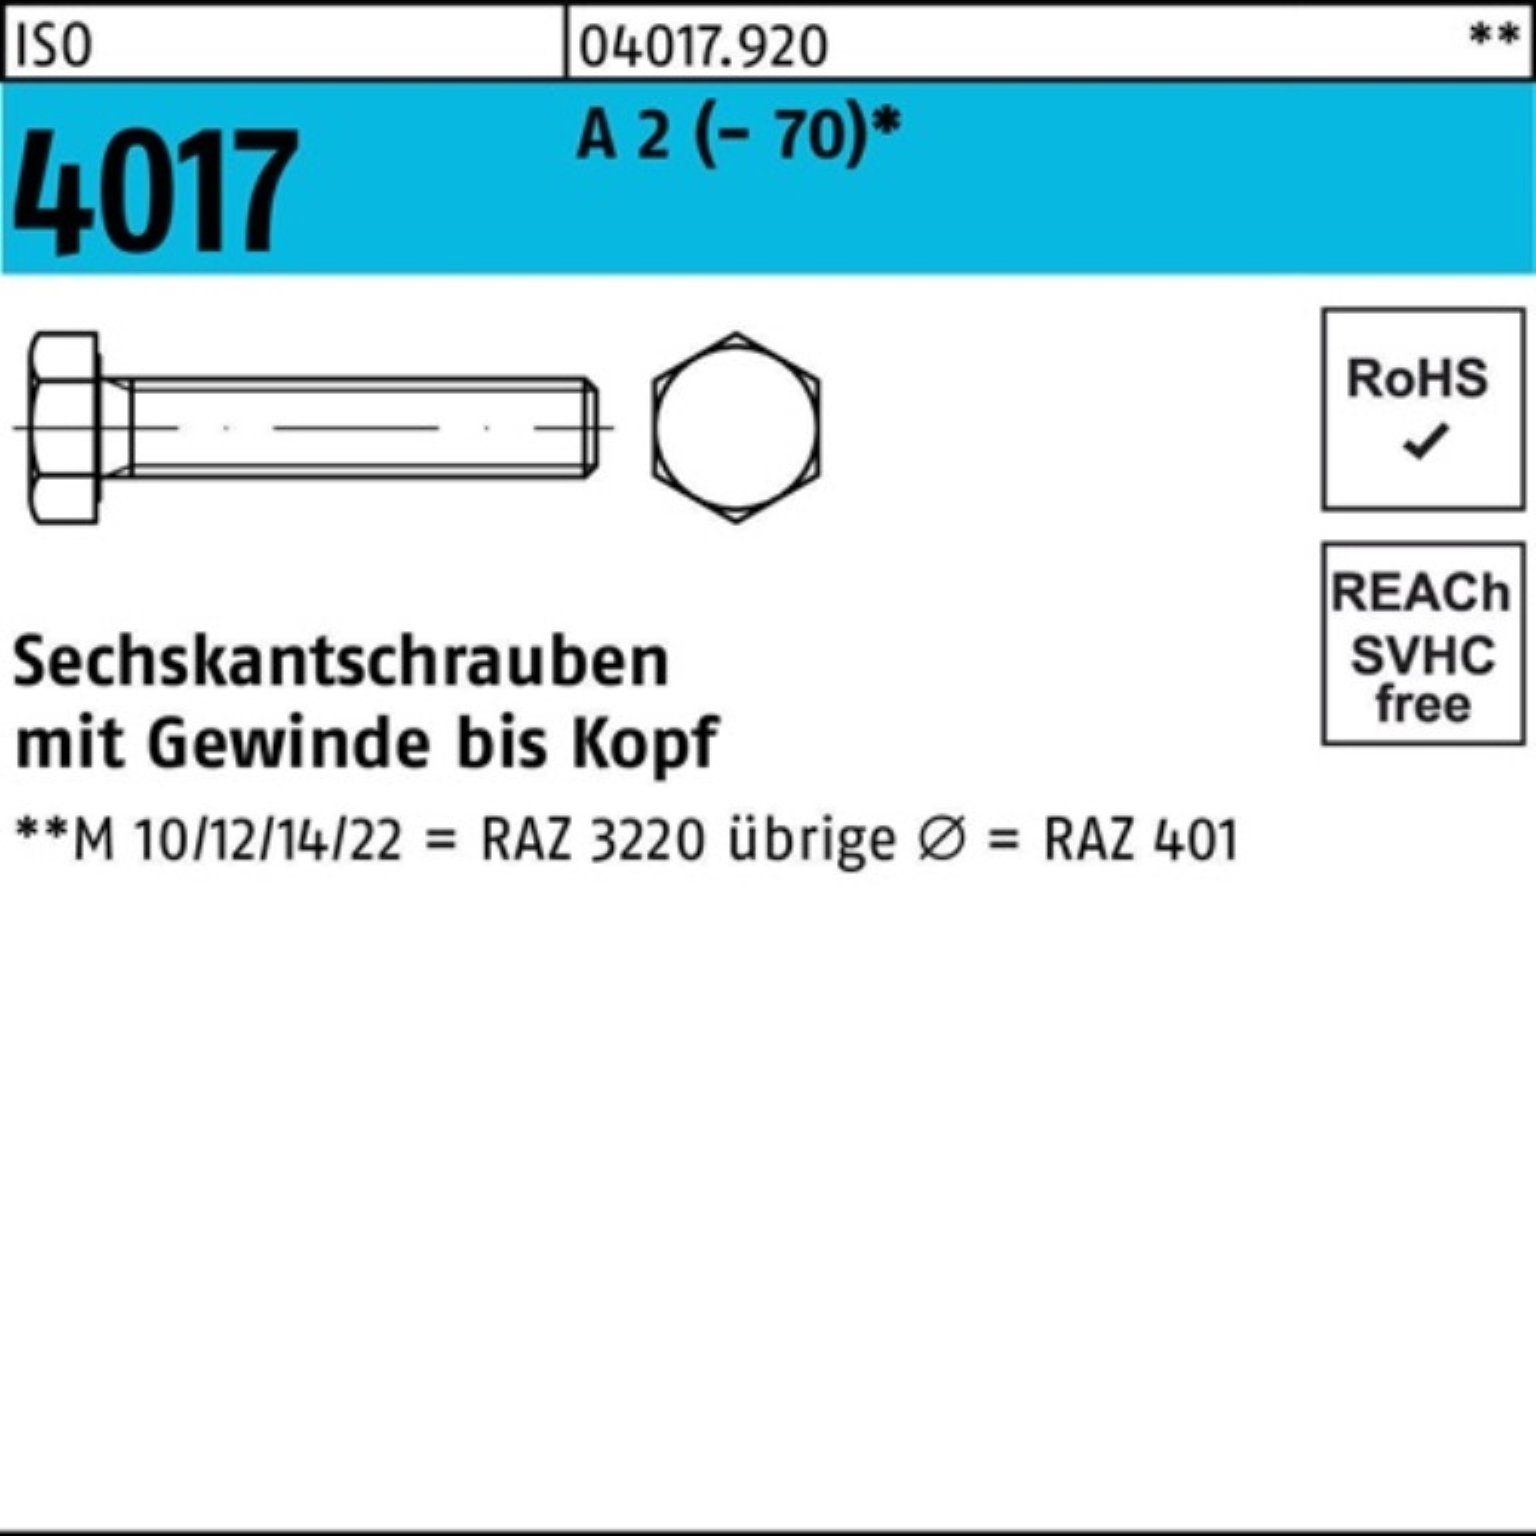 Bufab Sechskantschraube 100er Pack Sechskantschraube ISO 4017 VG M20x 45 A 2 (70) 25 Stück